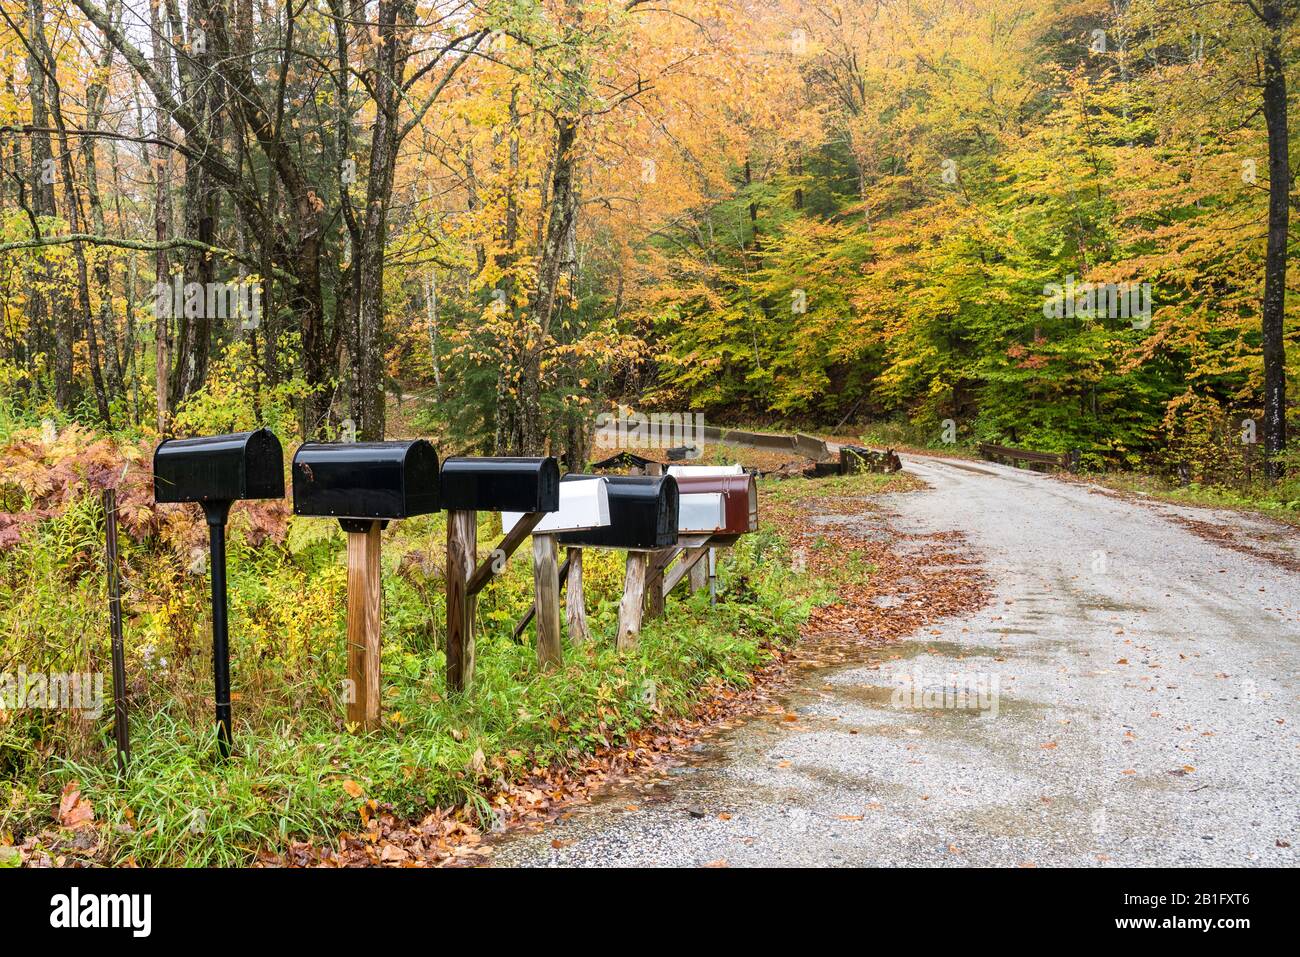 Traditionelle amerikanische Metallfächer in einer Reihe entlang einer Bergstraße, die an einem regnerischen Herbsttag mit Bäumen auf dem Gipfel des Herbstlaubs gesäumt ist Stockfoto